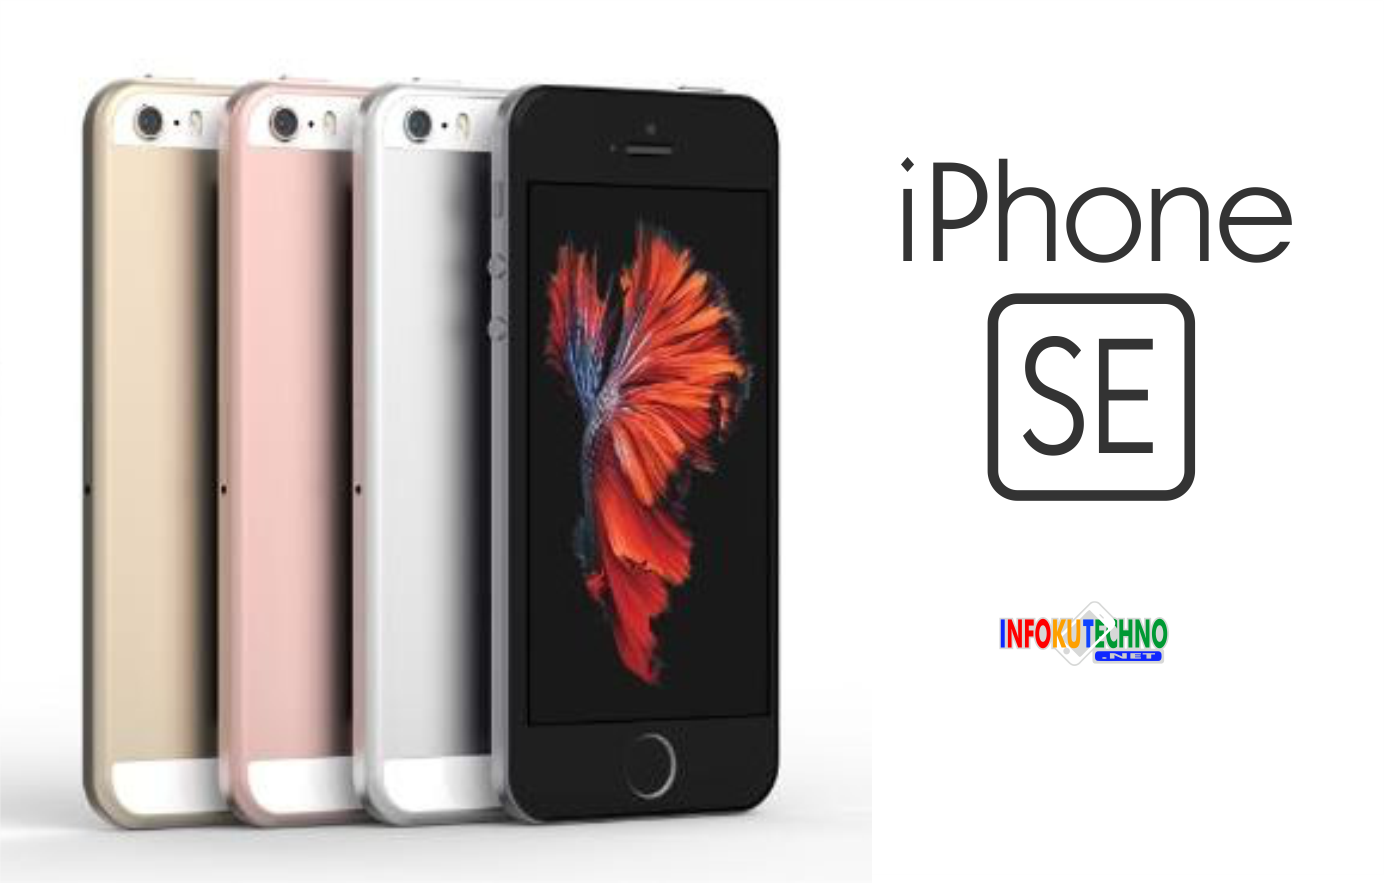 Apple iPhone SE Full Spesifikasi dan Harga Terbaru 2016 - Infoku Techno